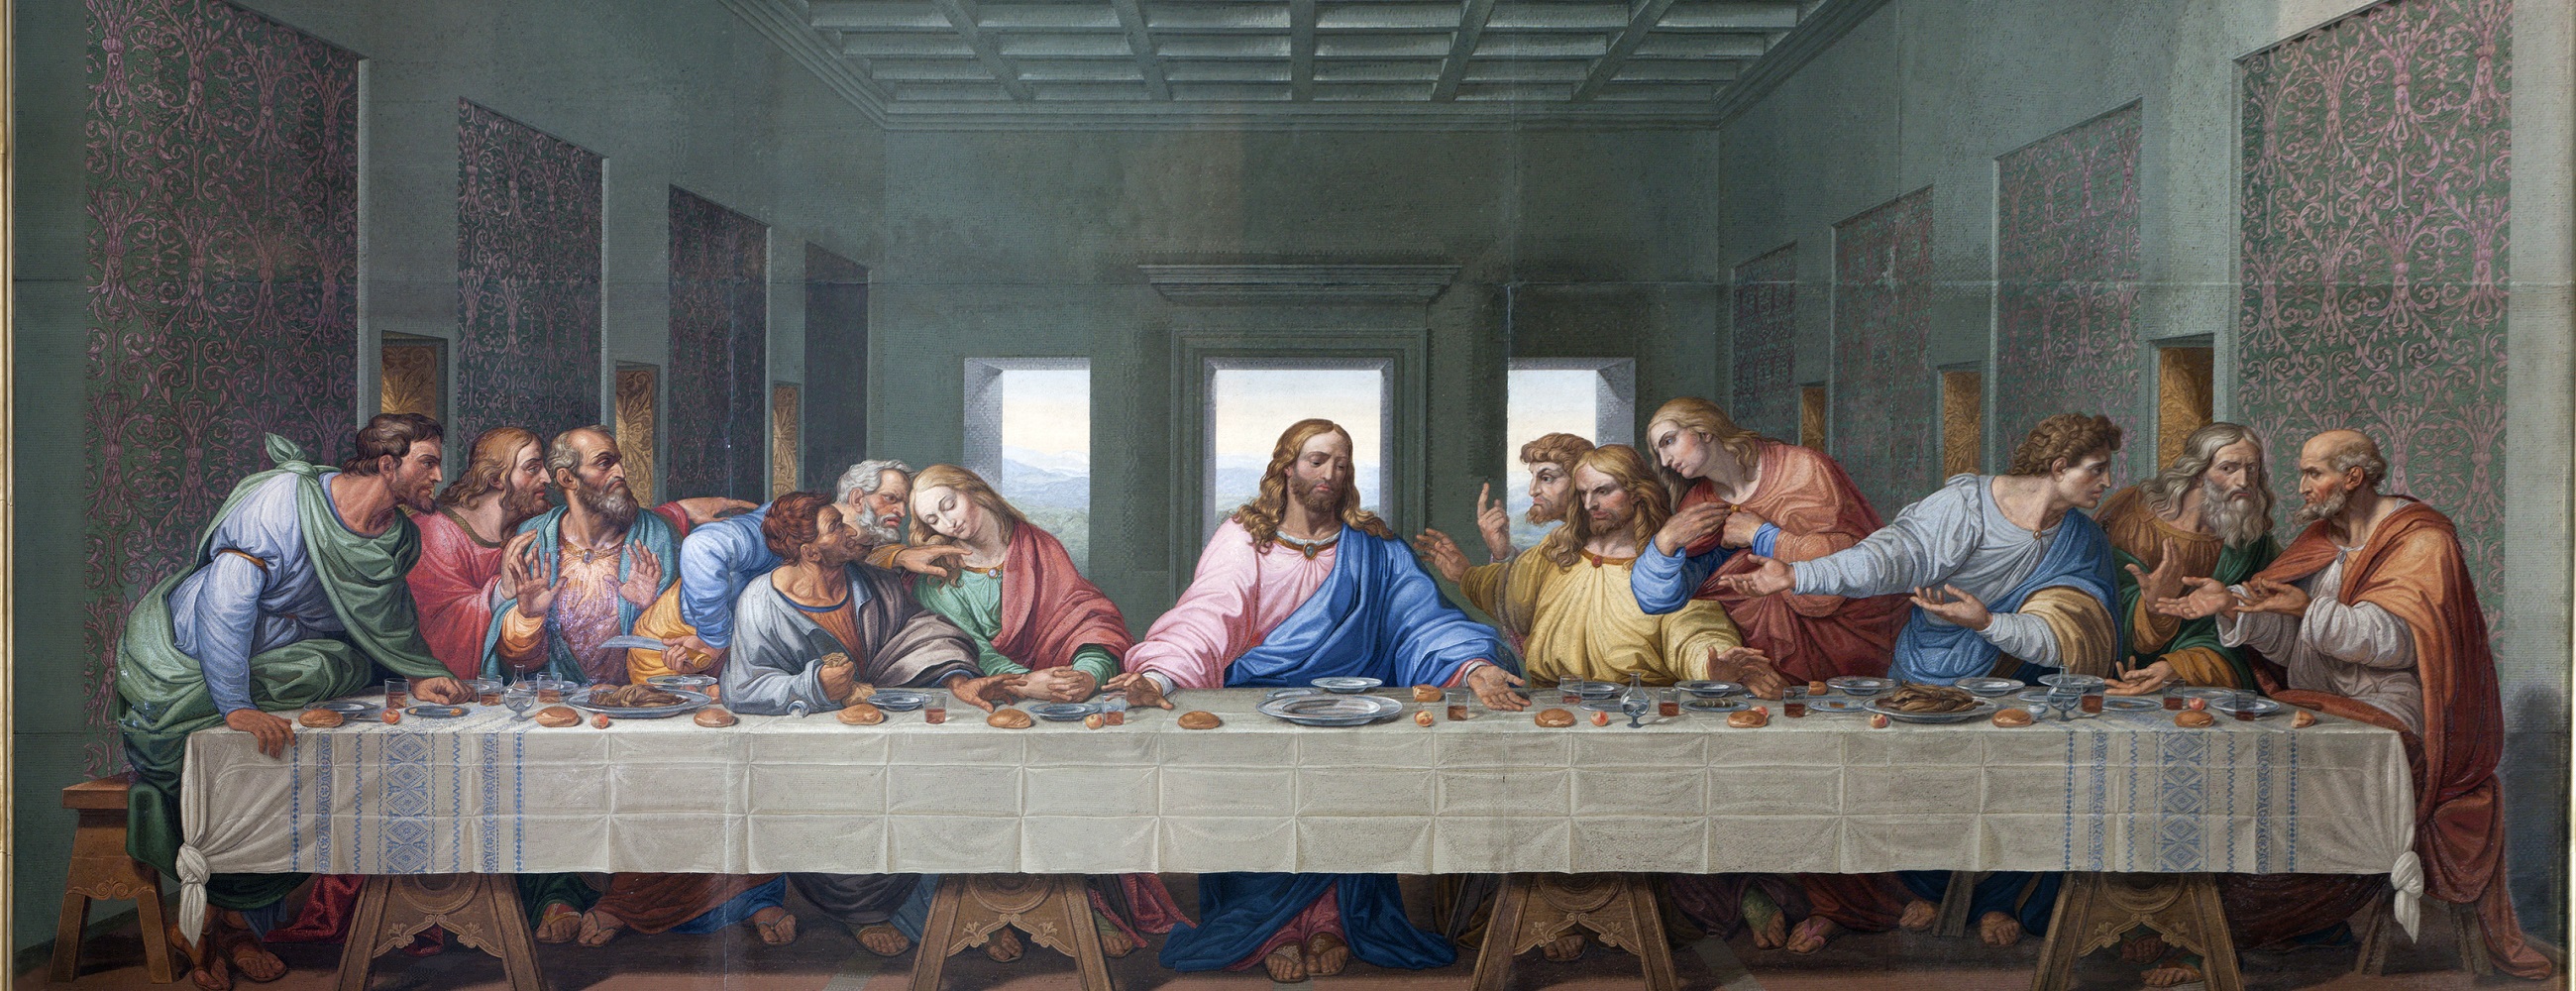 العشاء الأخير - The Last Supper - مقهى جرير الثقافي